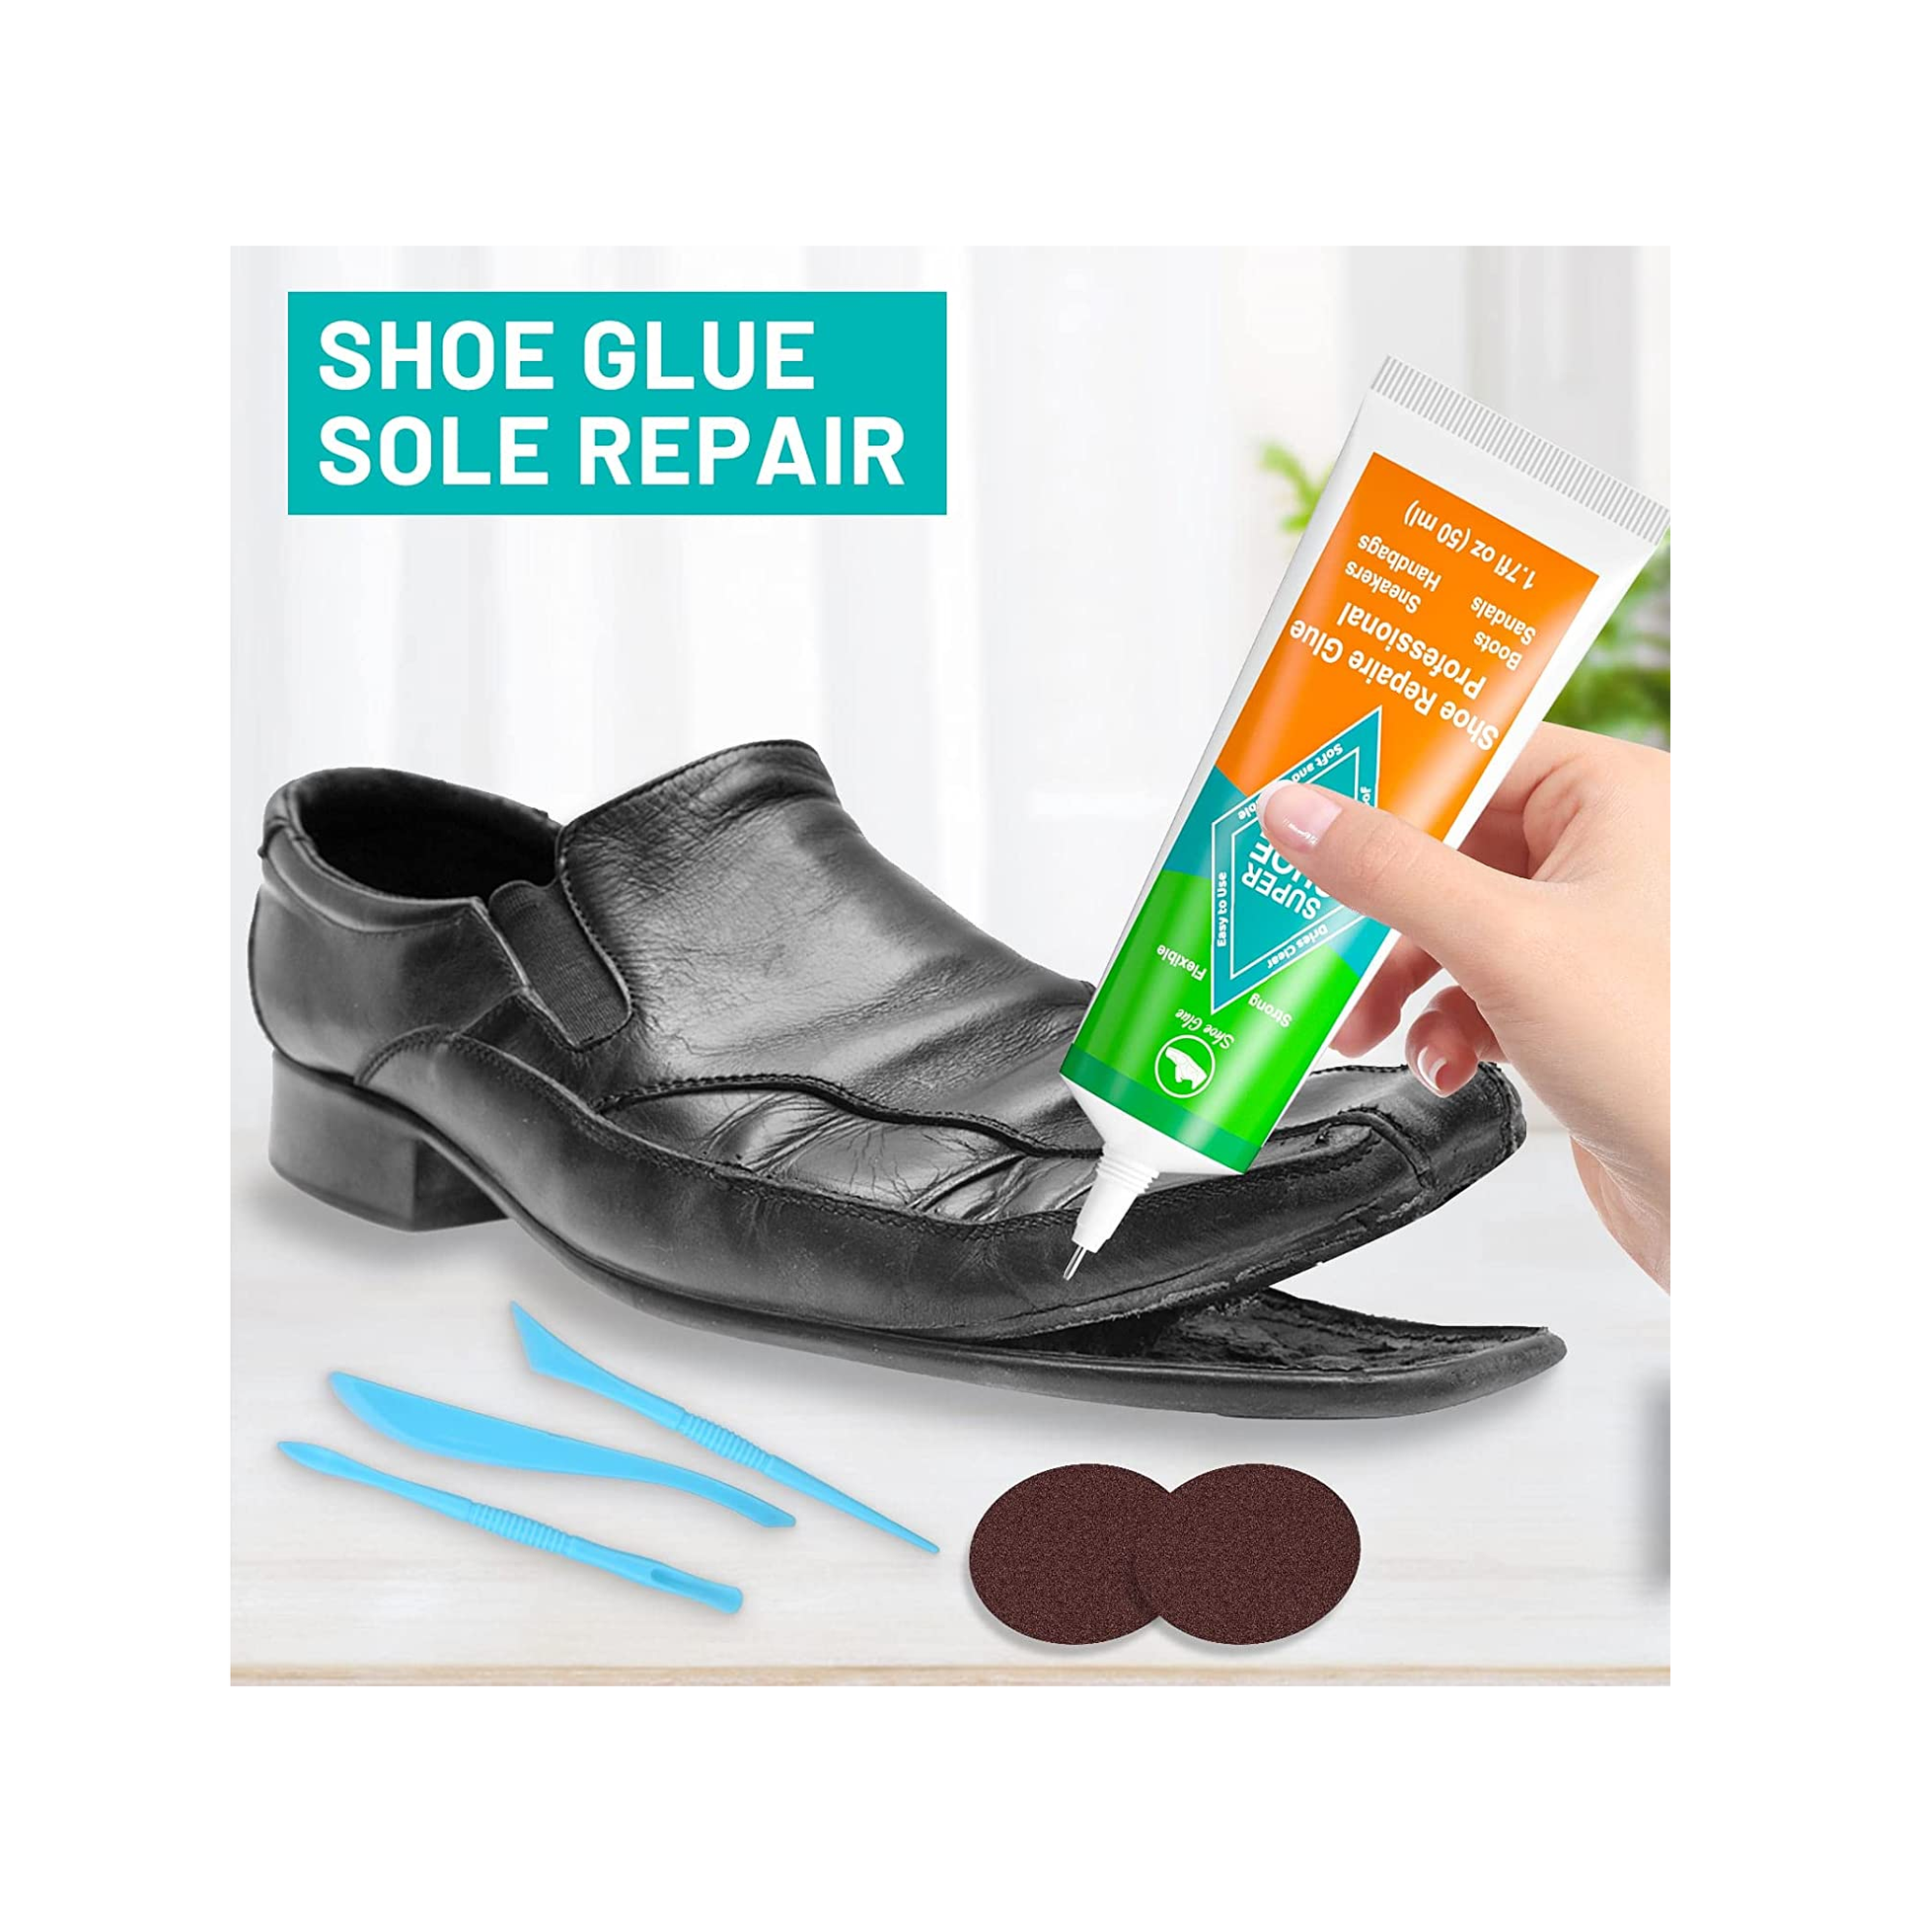 Shoe Glue Sole Repair Adhesive, Evatage Waterproof Shoe Repair Glue Kit  with Fix